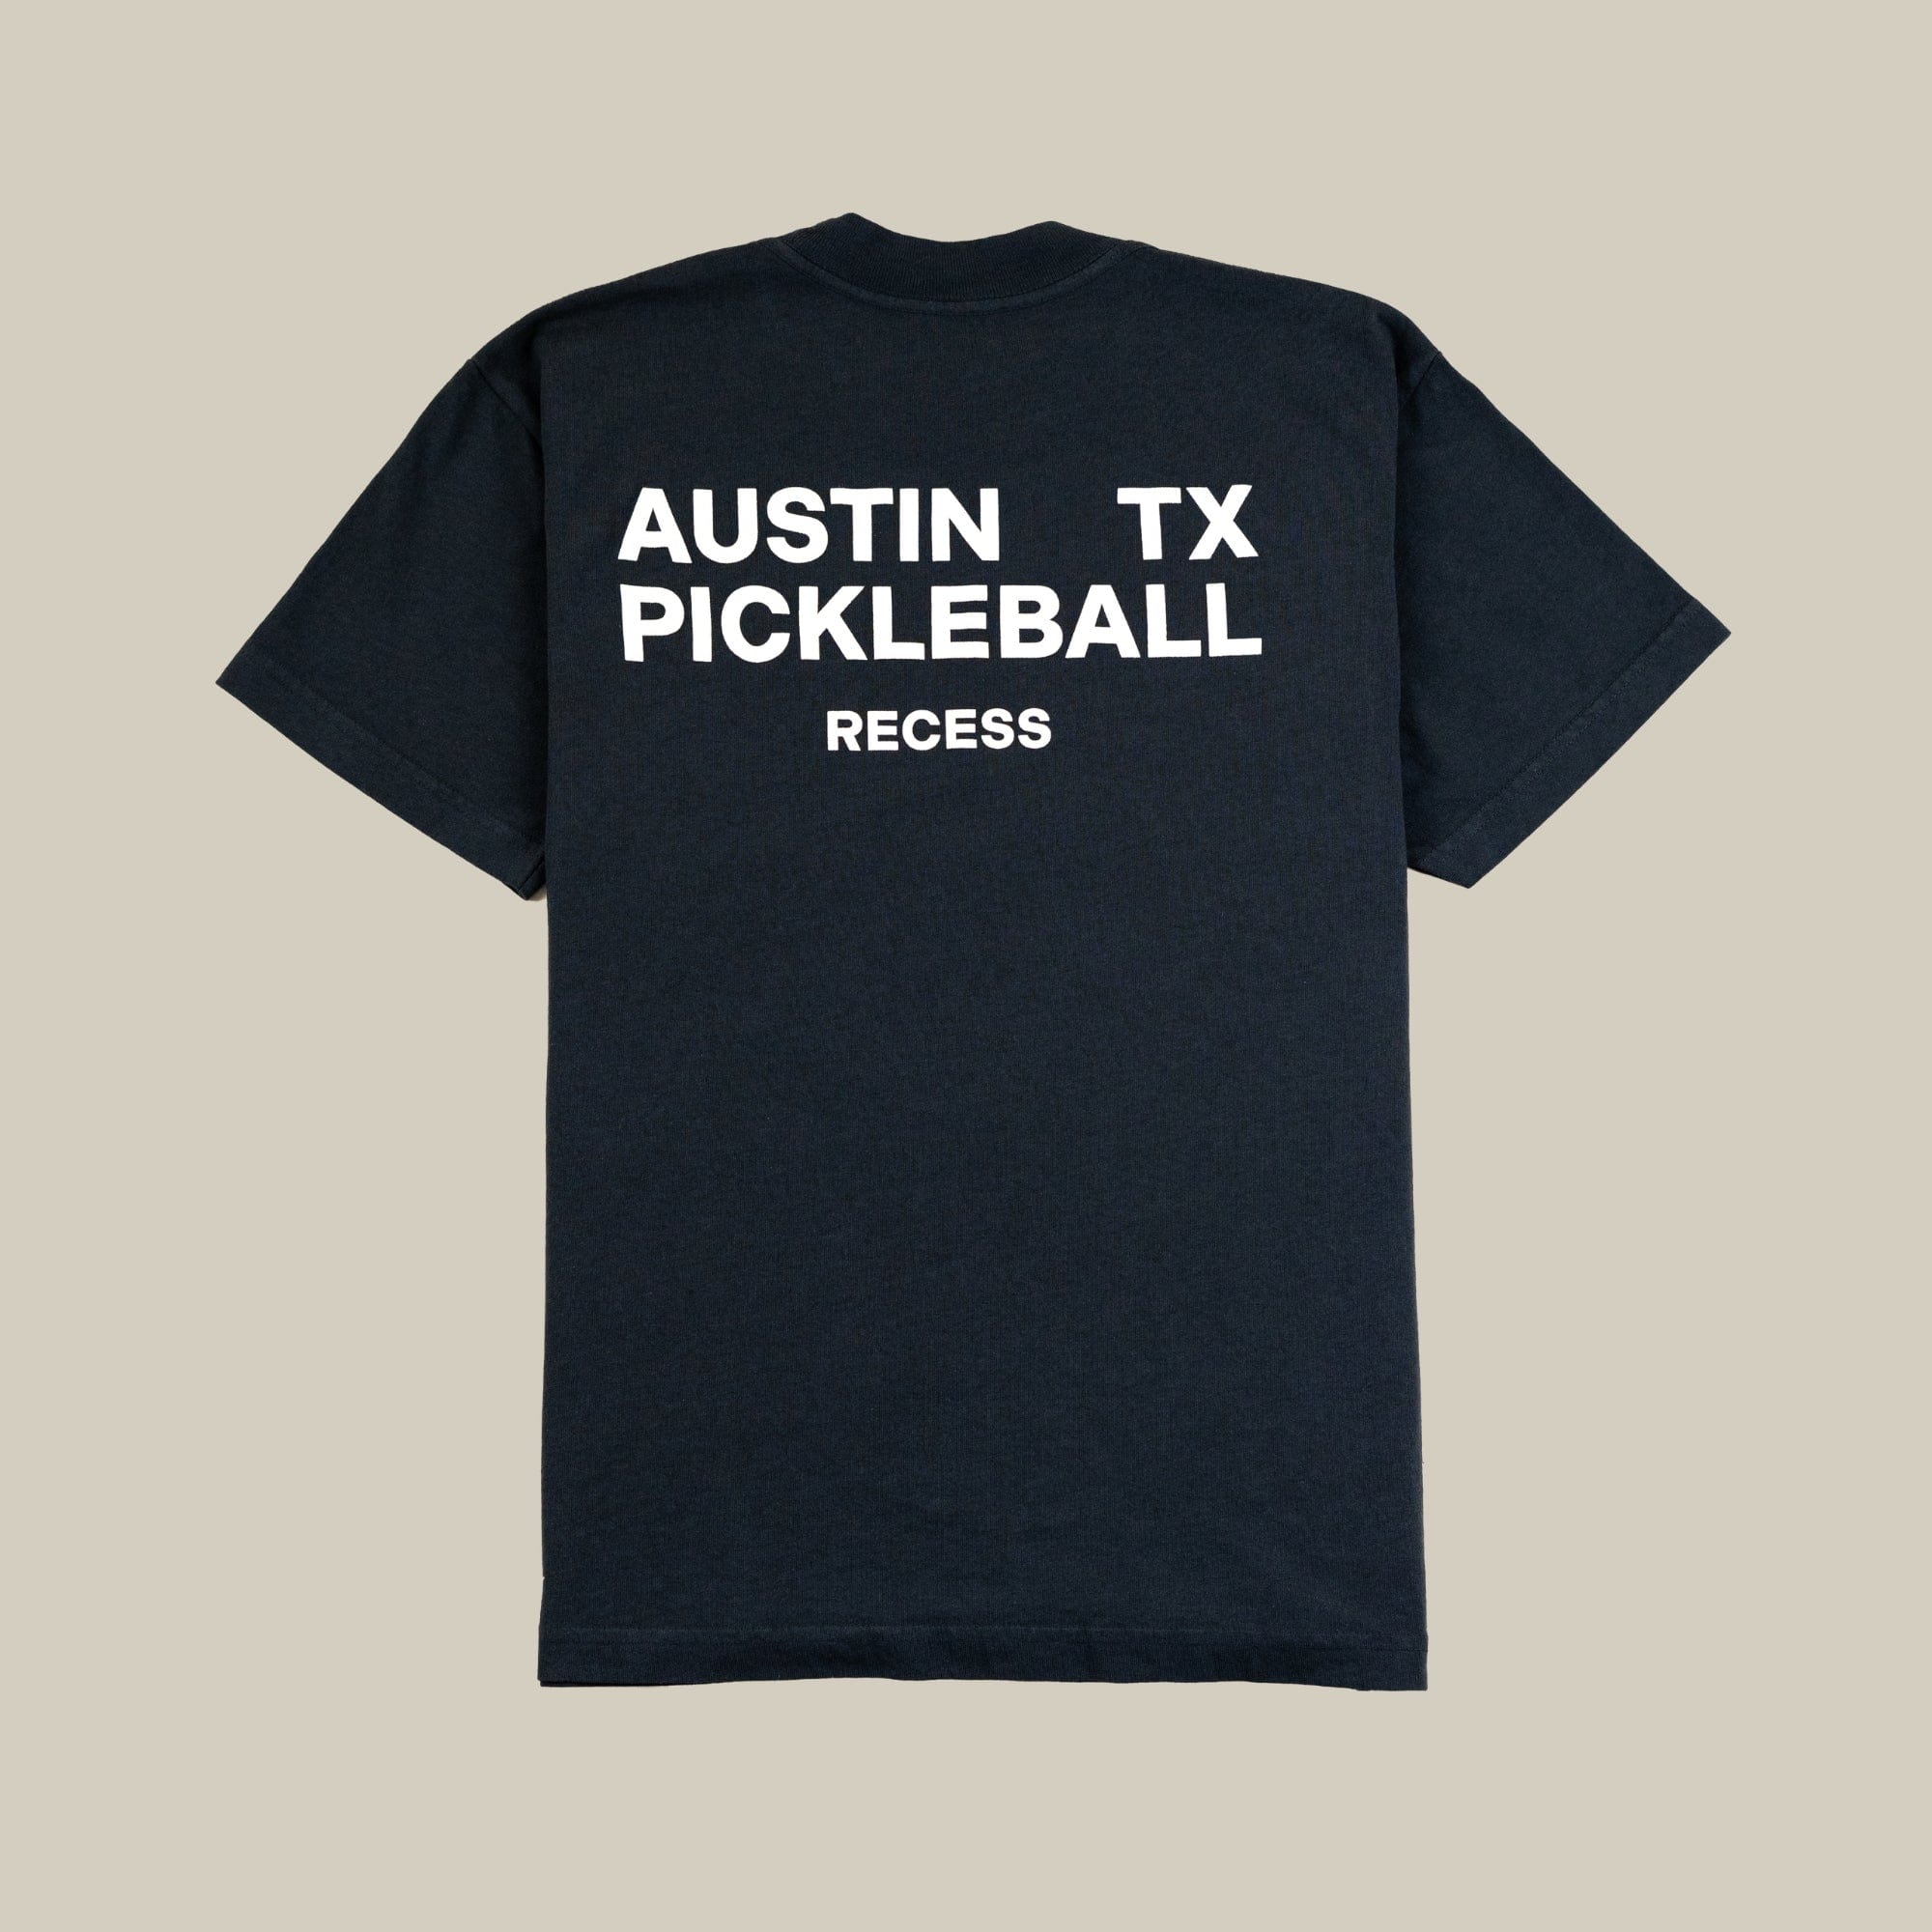 Recess Pickleball T-Shirt Austin Tee